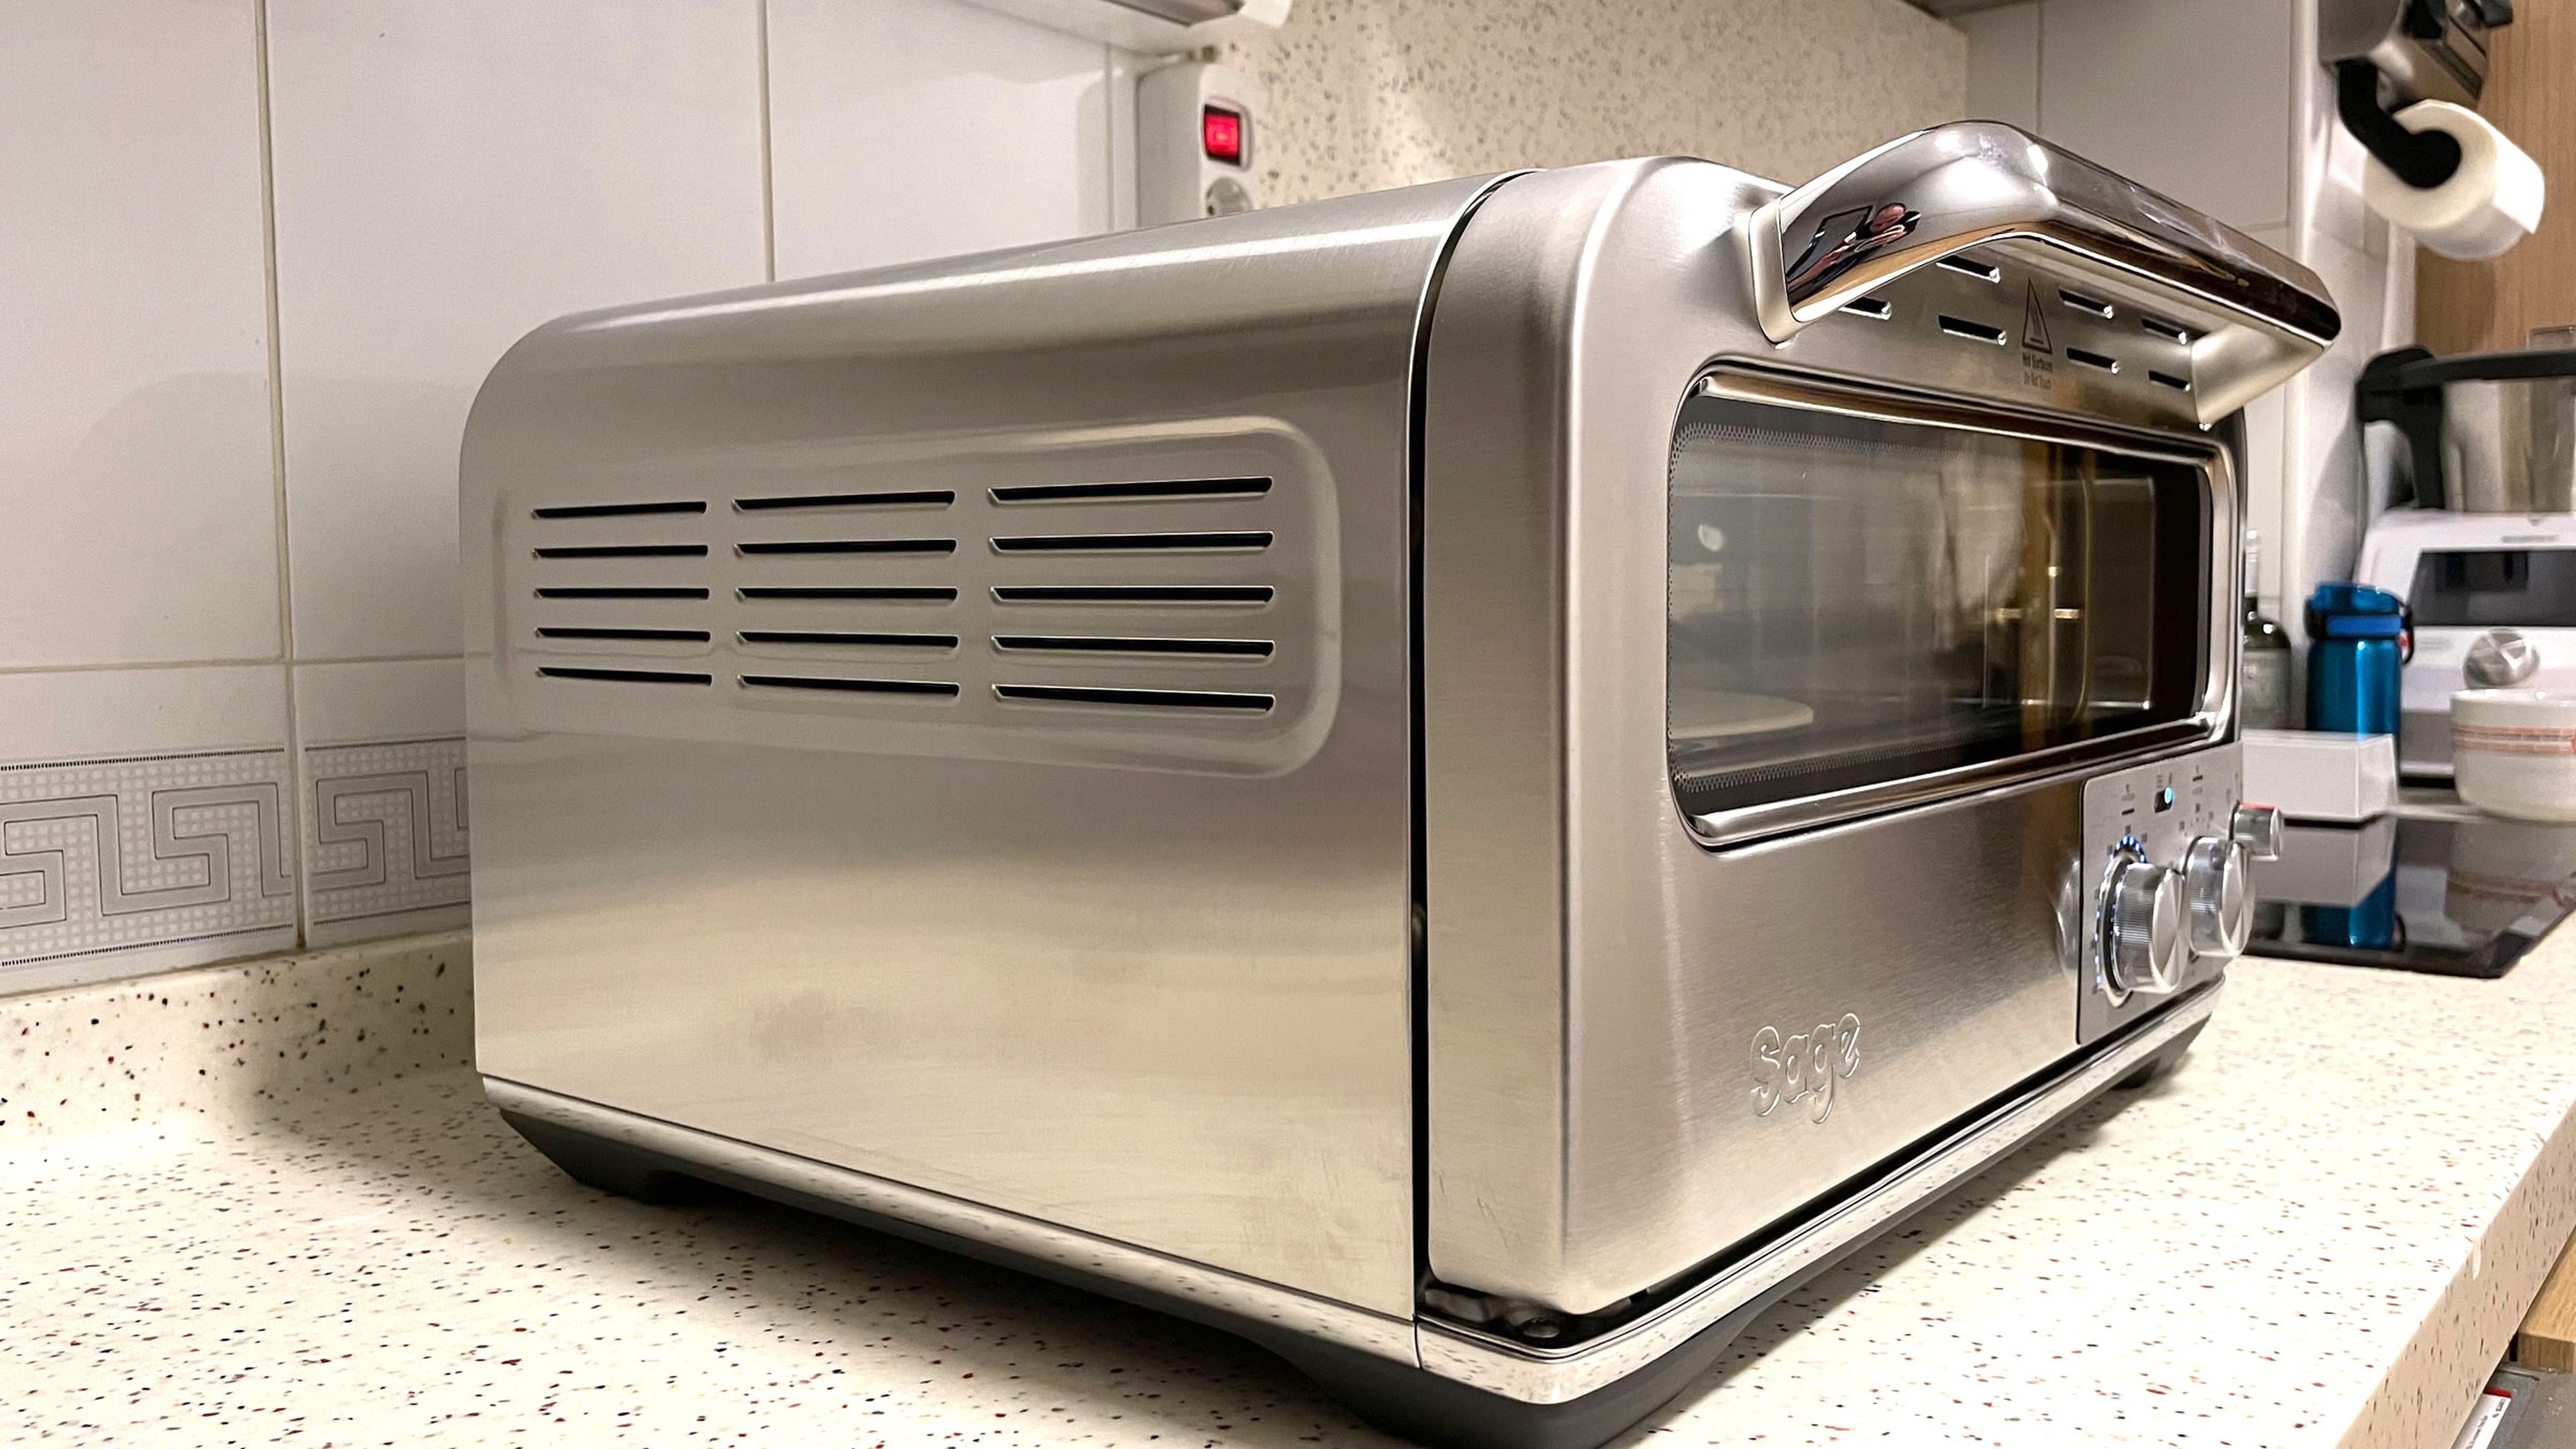 Una pizzería en tu propia casa? Probamos el The Smart Oven Pizzaiolo de Sage  Appliances